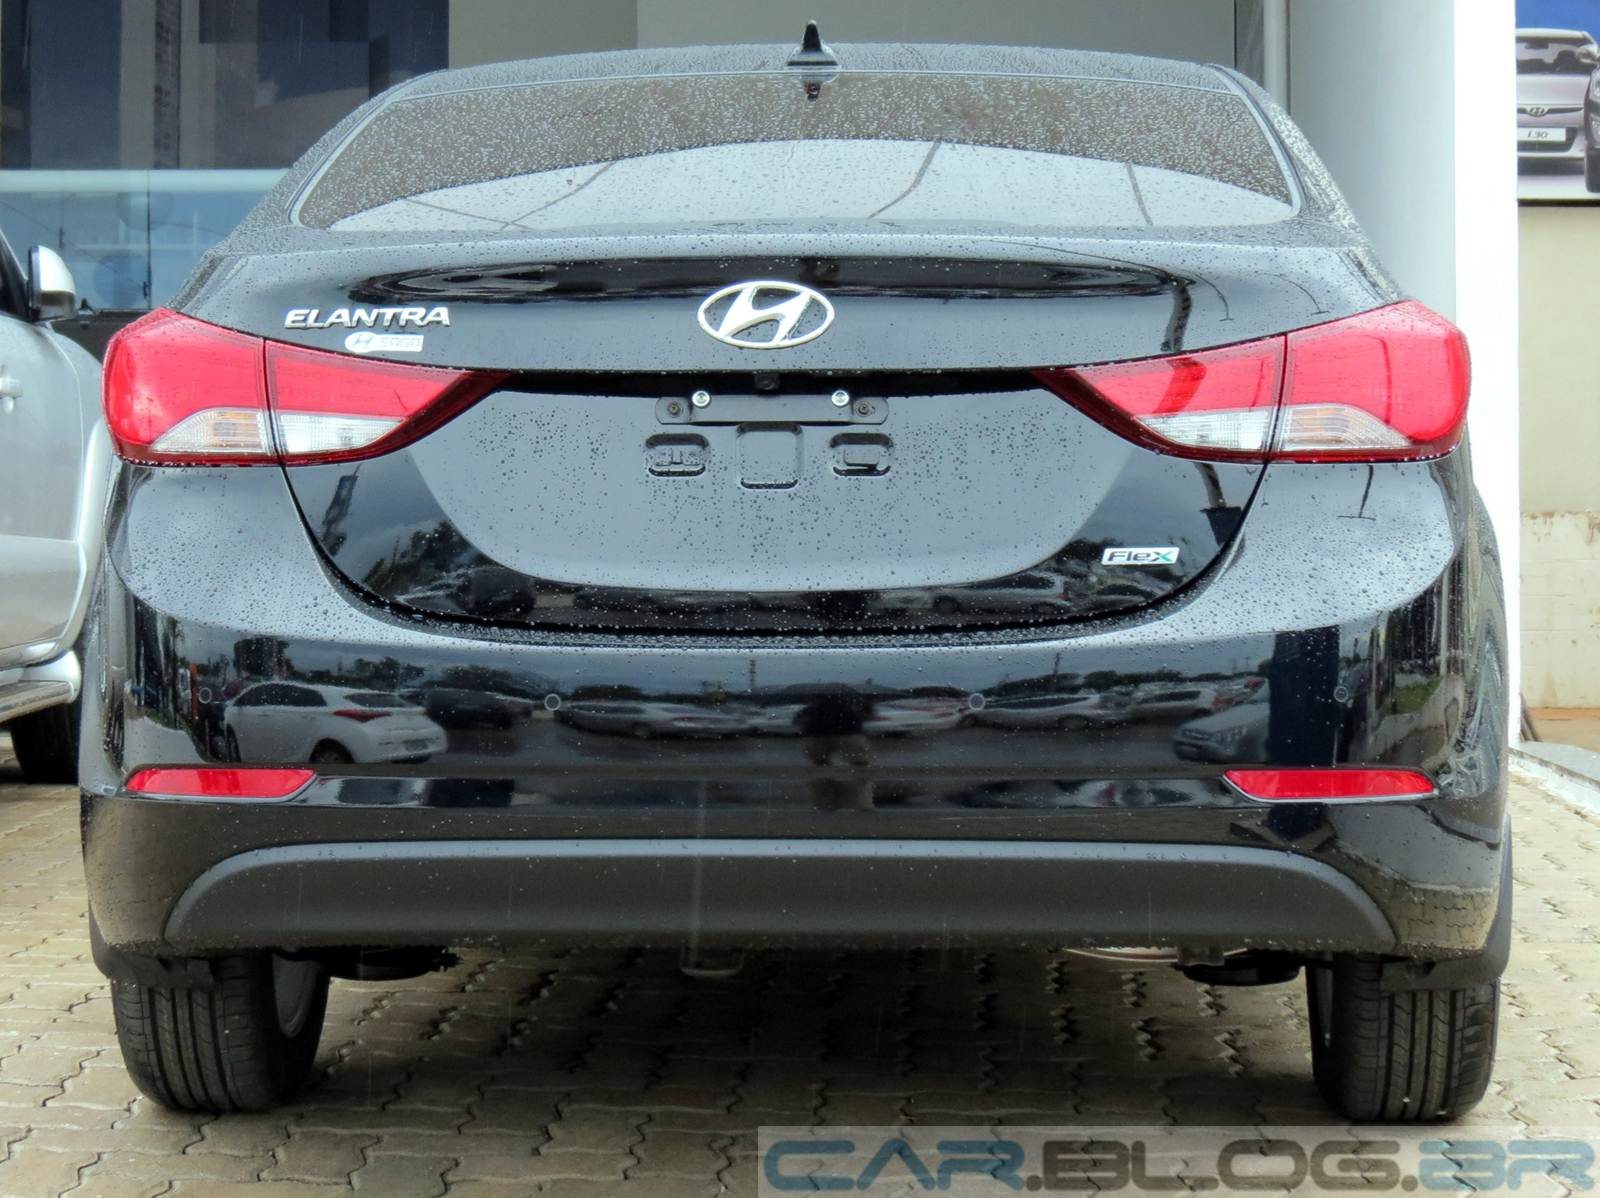 Hyundai Elantra 2.0 Flex preço, equipamentos e ficha técnica